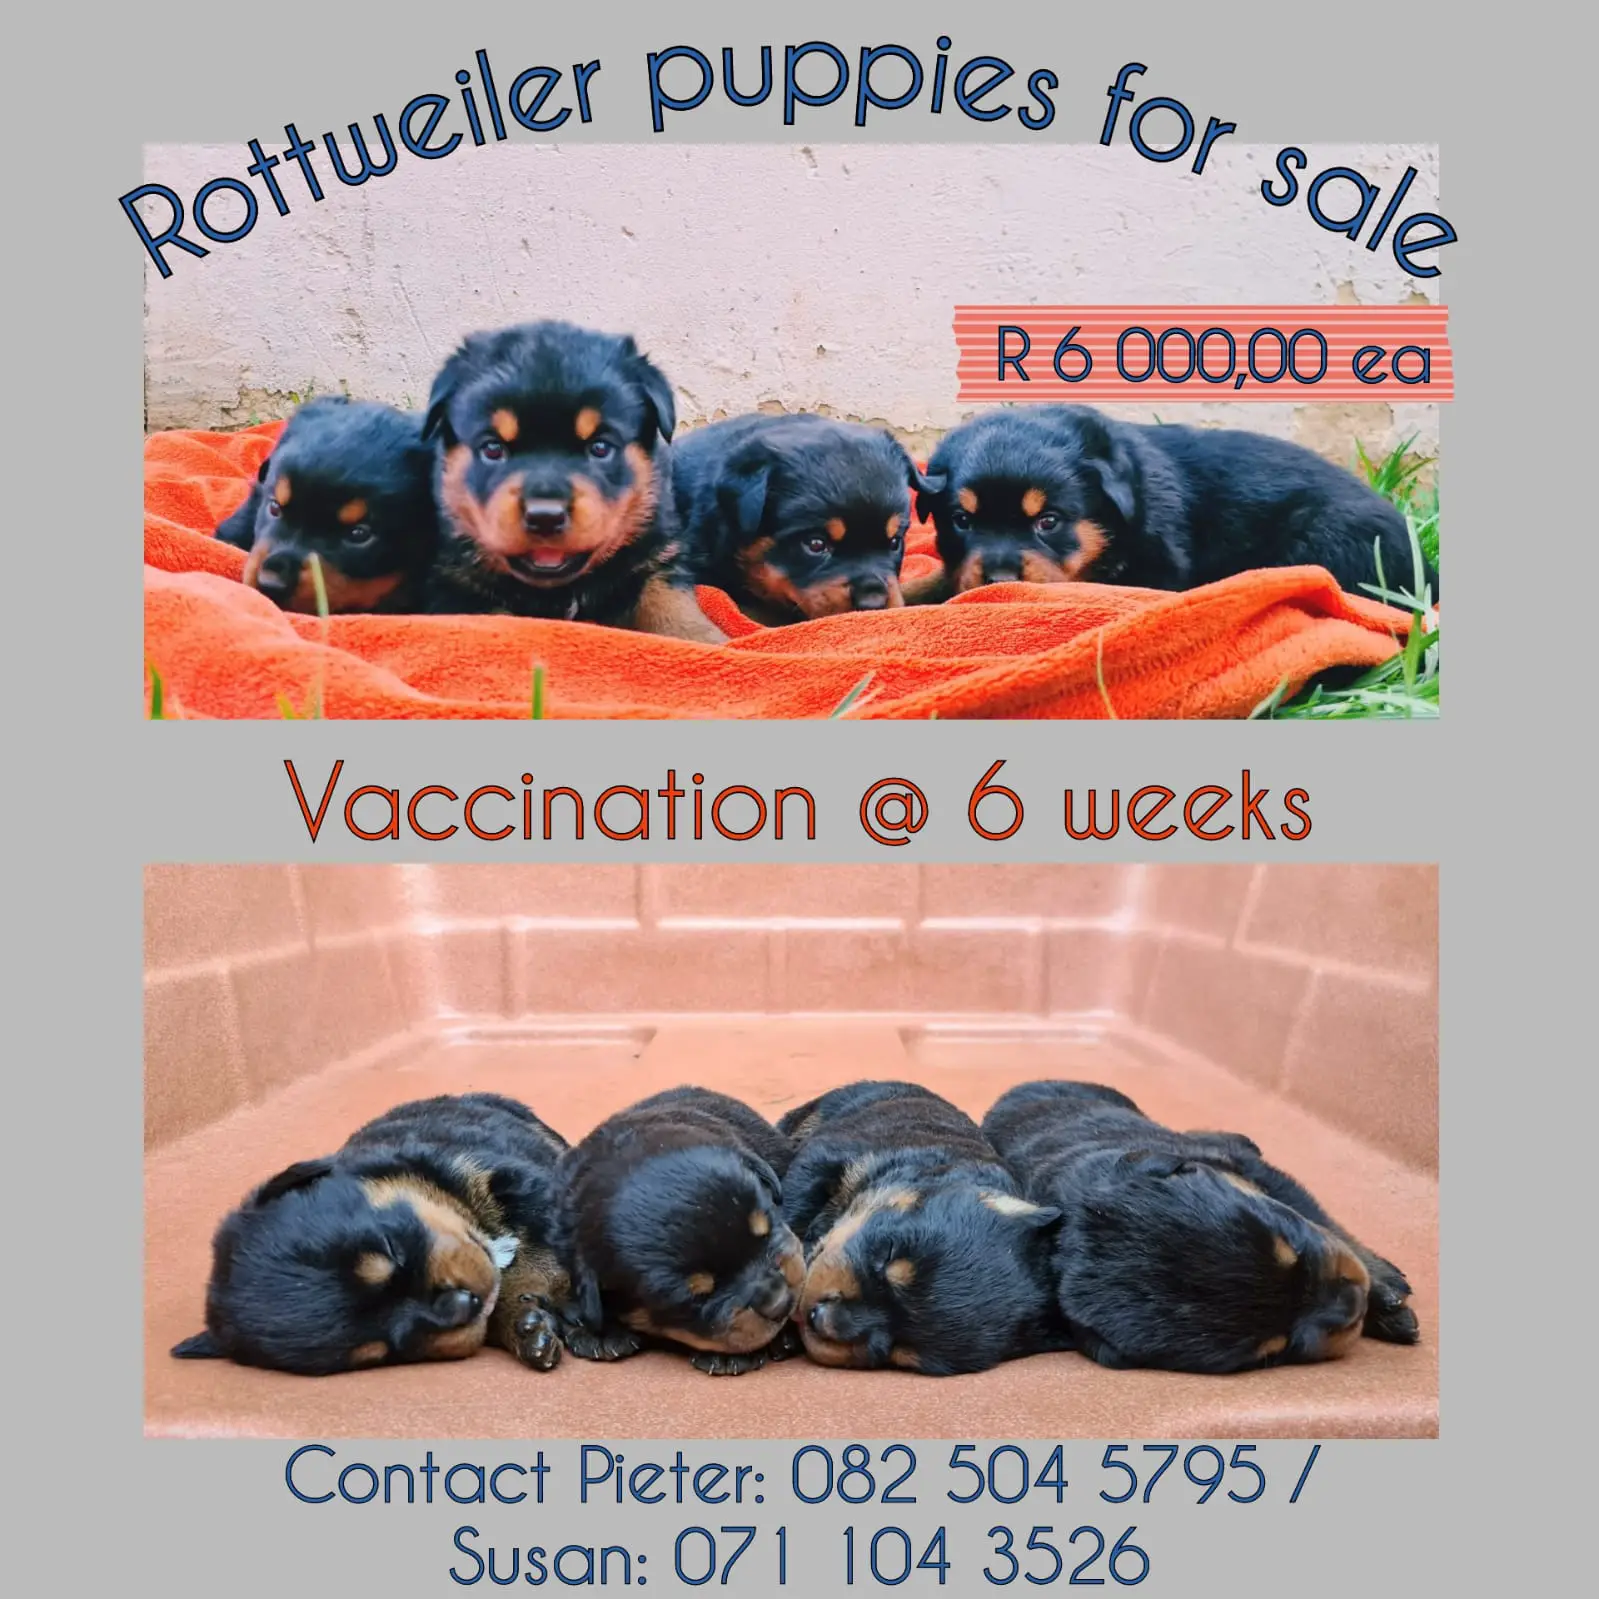 Rottweiler Puppies in Johannesburg (01/12/2021)